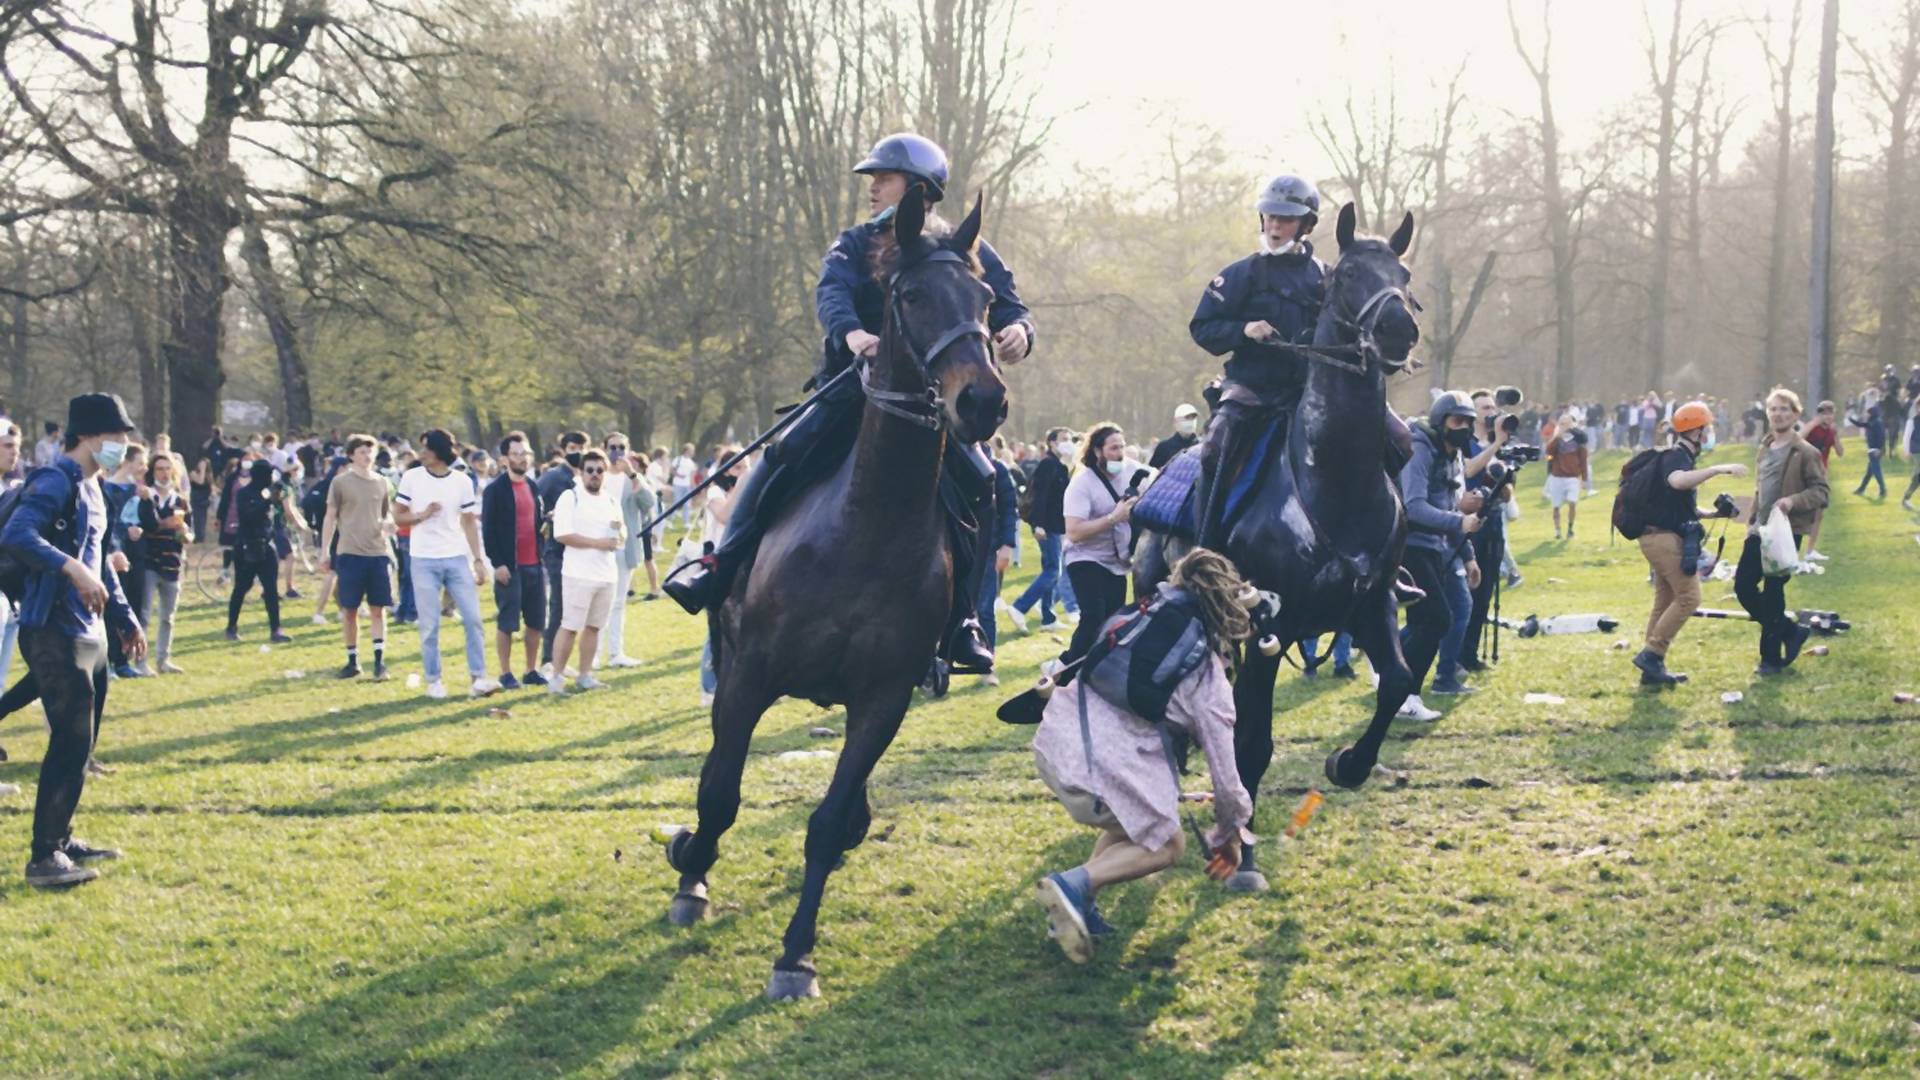 Internetom kruži snimak belgijskog policajca koji konjem gazi tinejdžerku na kovid žurki u parku